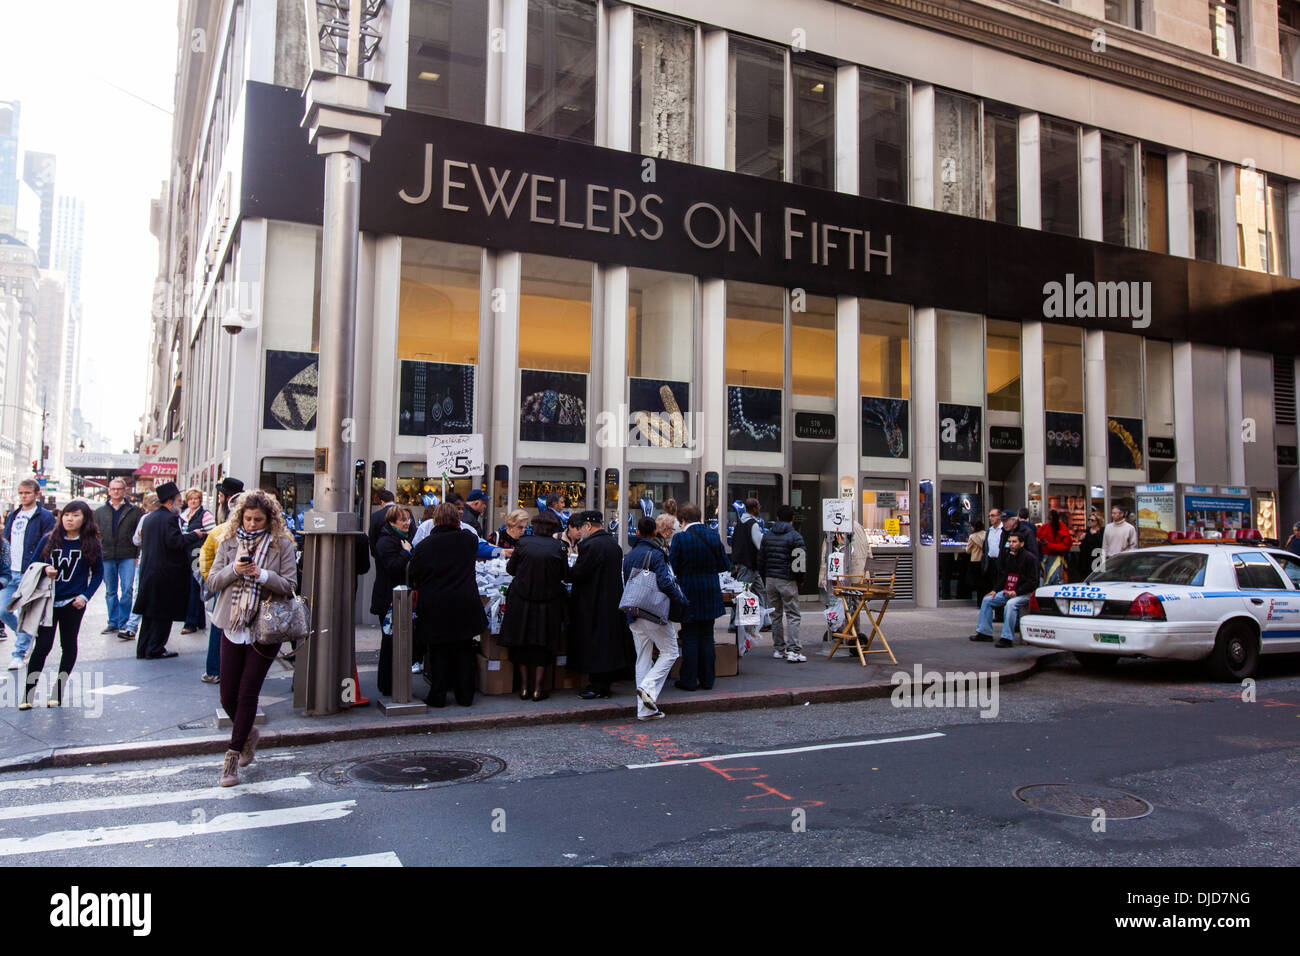 Juweliere des fünften, Fifth Avenue, New York City, Vereinigte Staaten von Amerika. Stockfoto